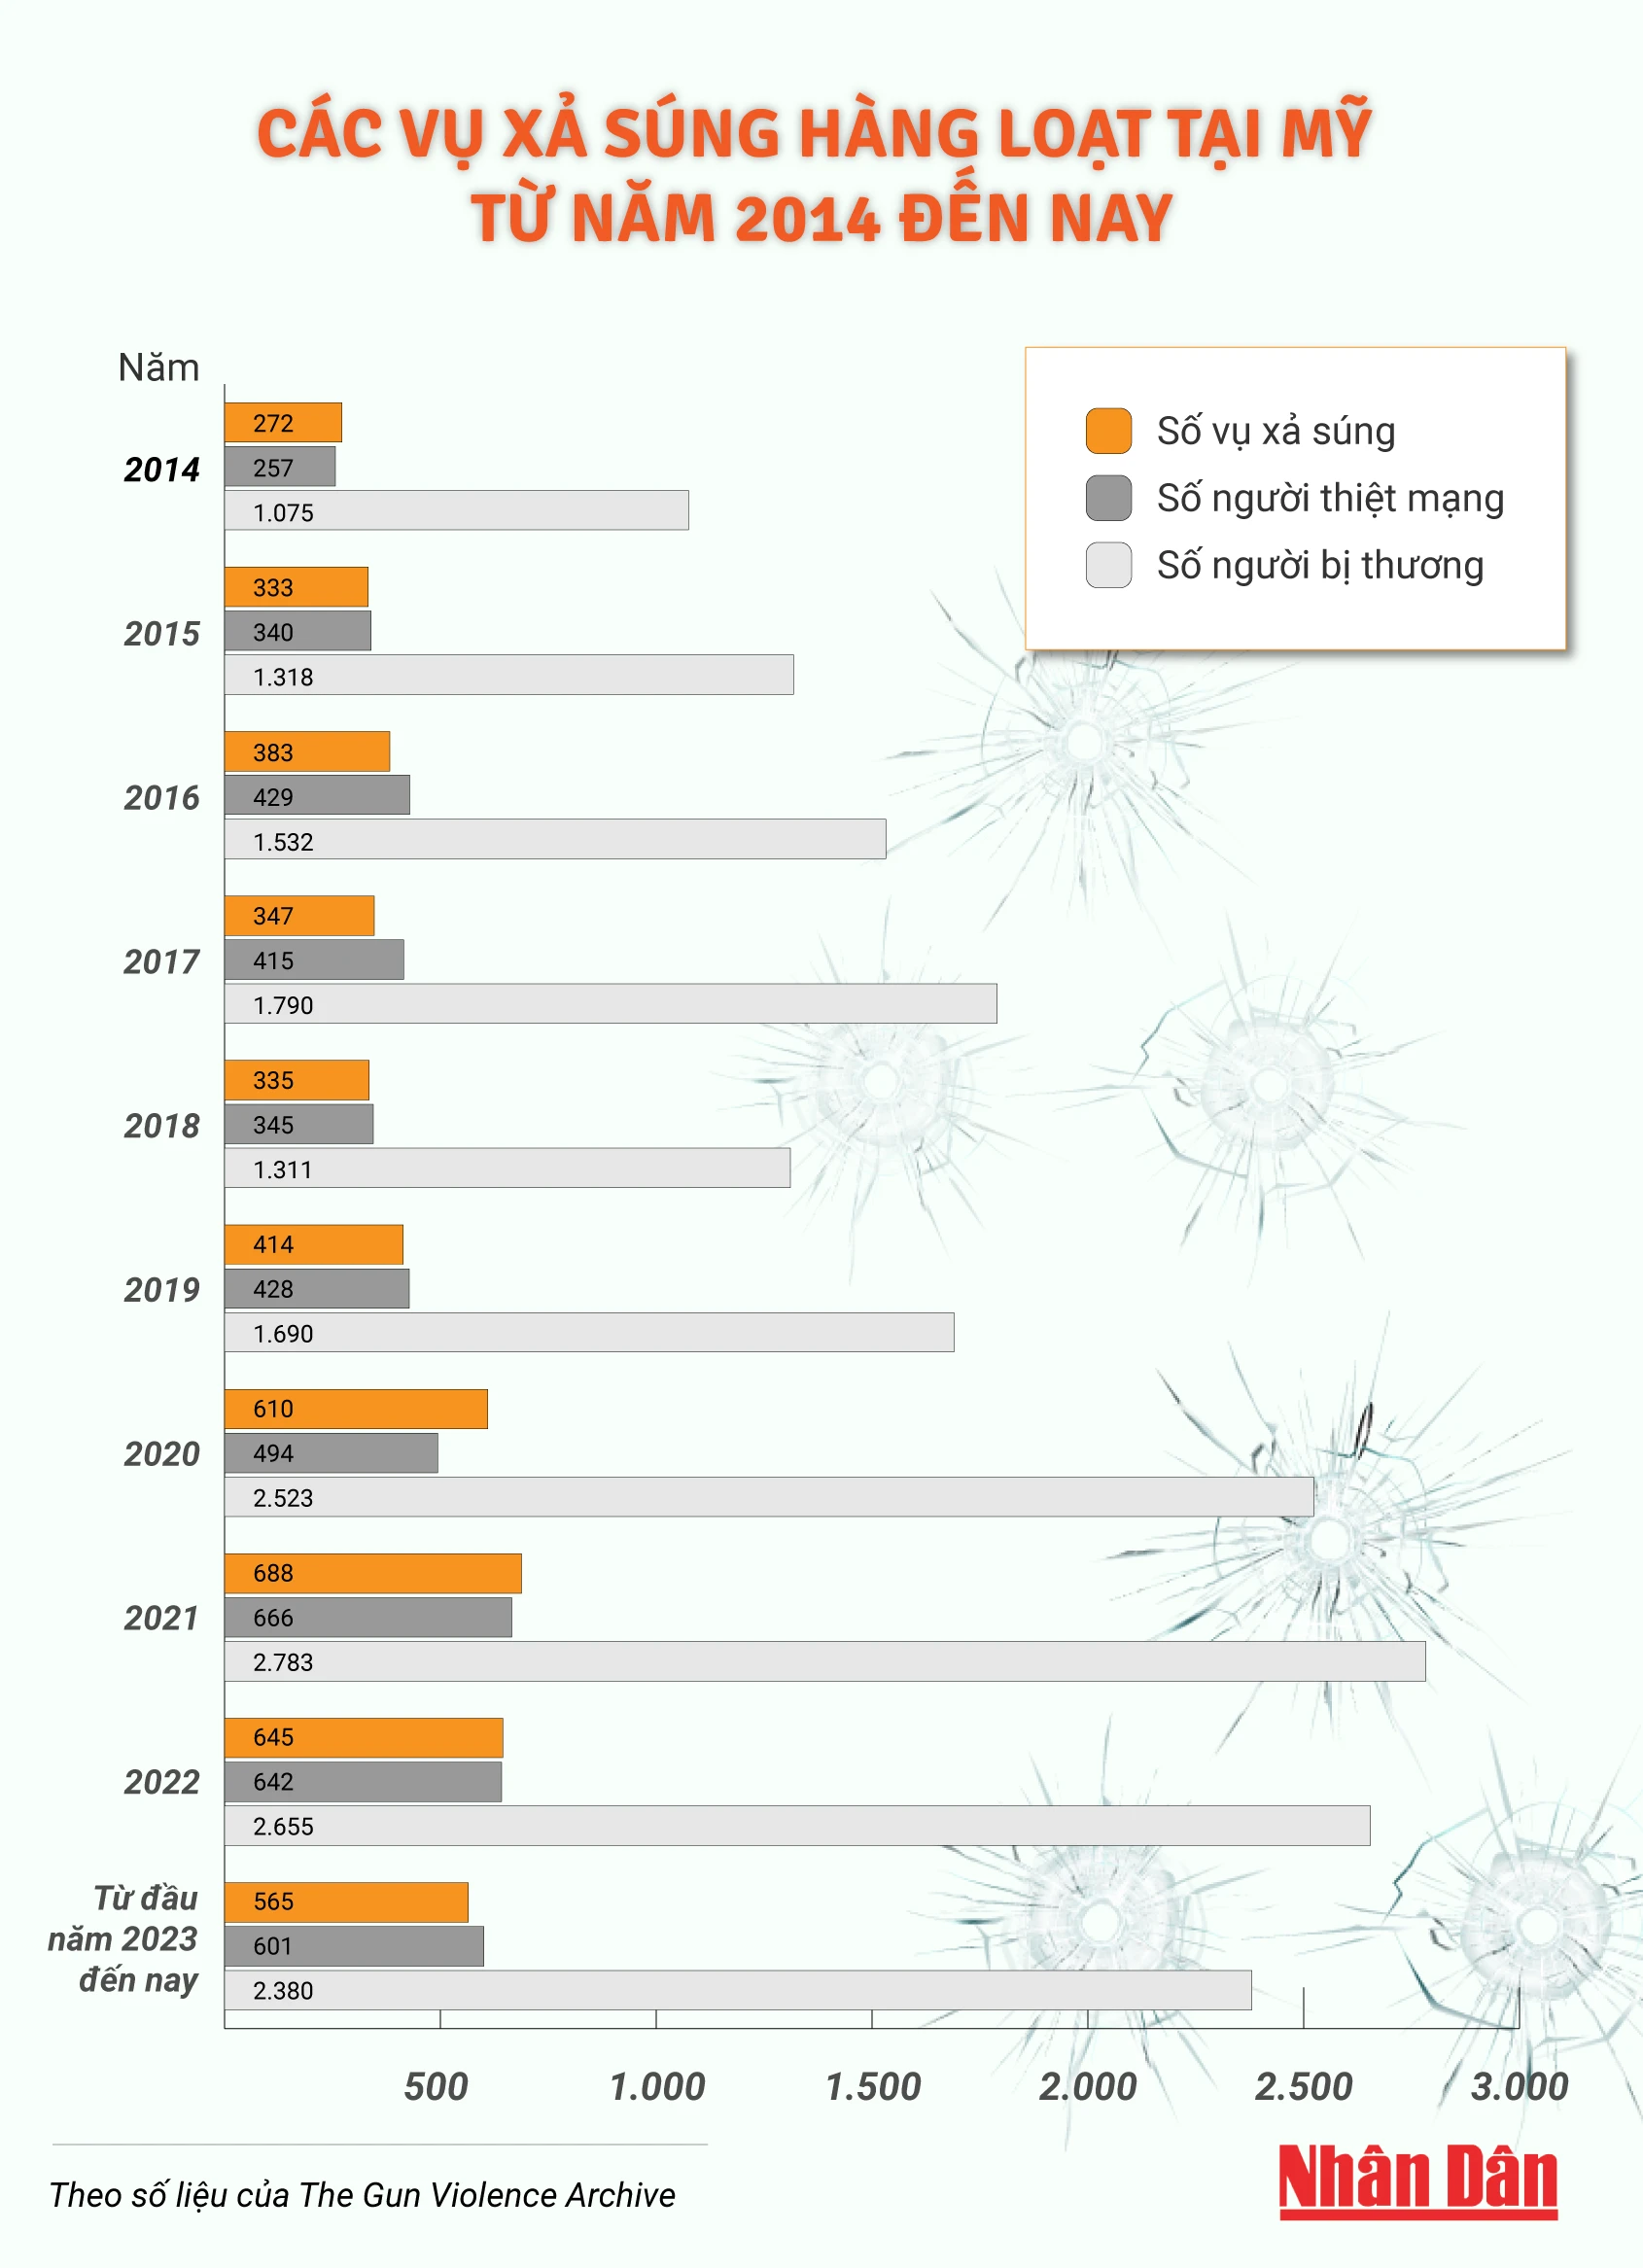 [Infographic] Các vụ xả súng hàng loạt tại Mỹ trong 10 năm gần đây ảnh 1